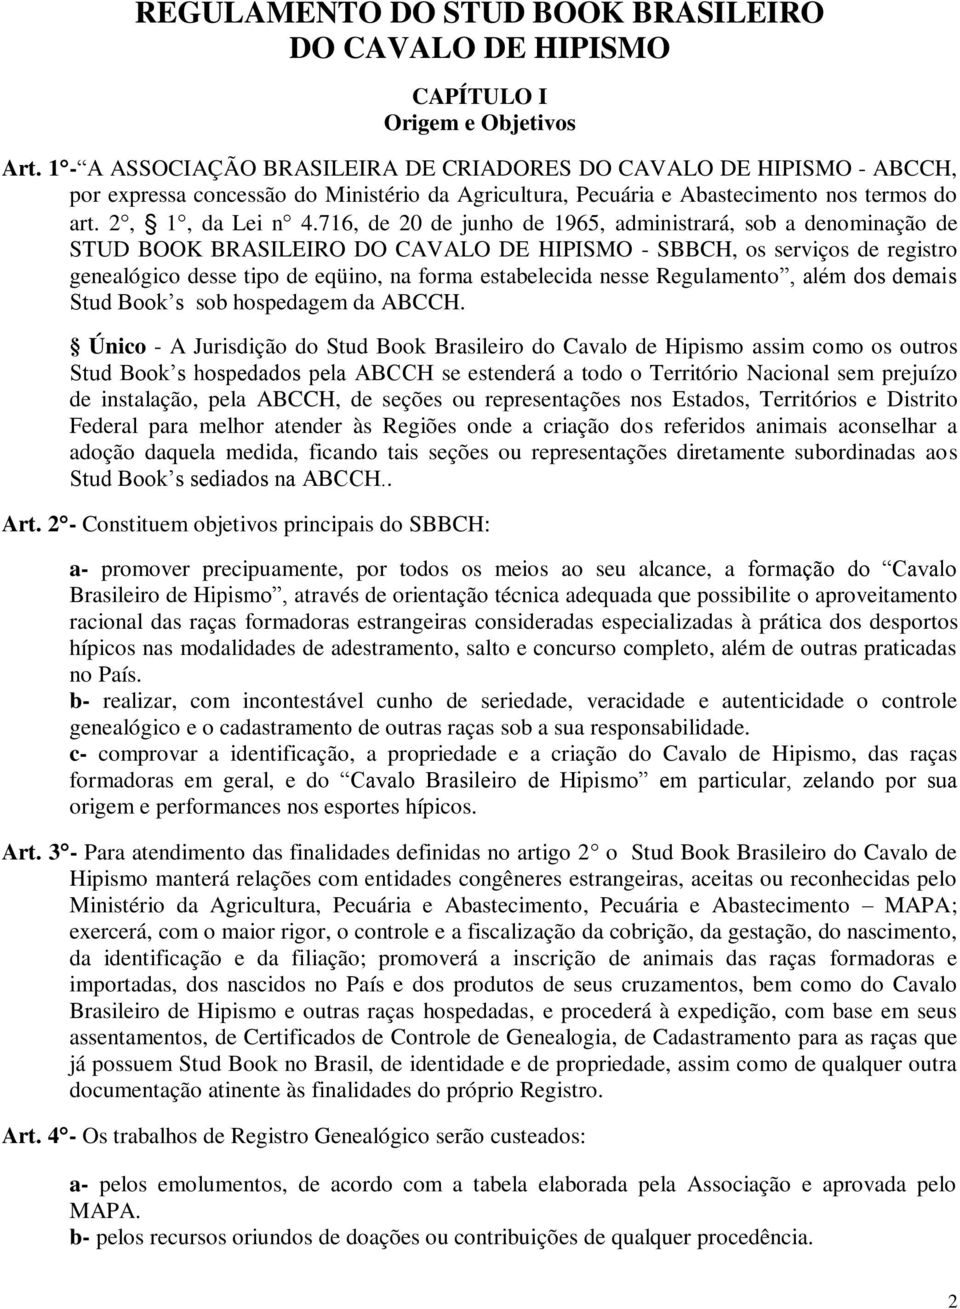 716, de 20 de junho de 1965, administrará, sob a denominação de STUD BOOK BRASILEIRO DO CAVALO DE HIPISMO - SBBCH, os serviços de registro genealógico desse tipo de eqüino, na forma estabelecida